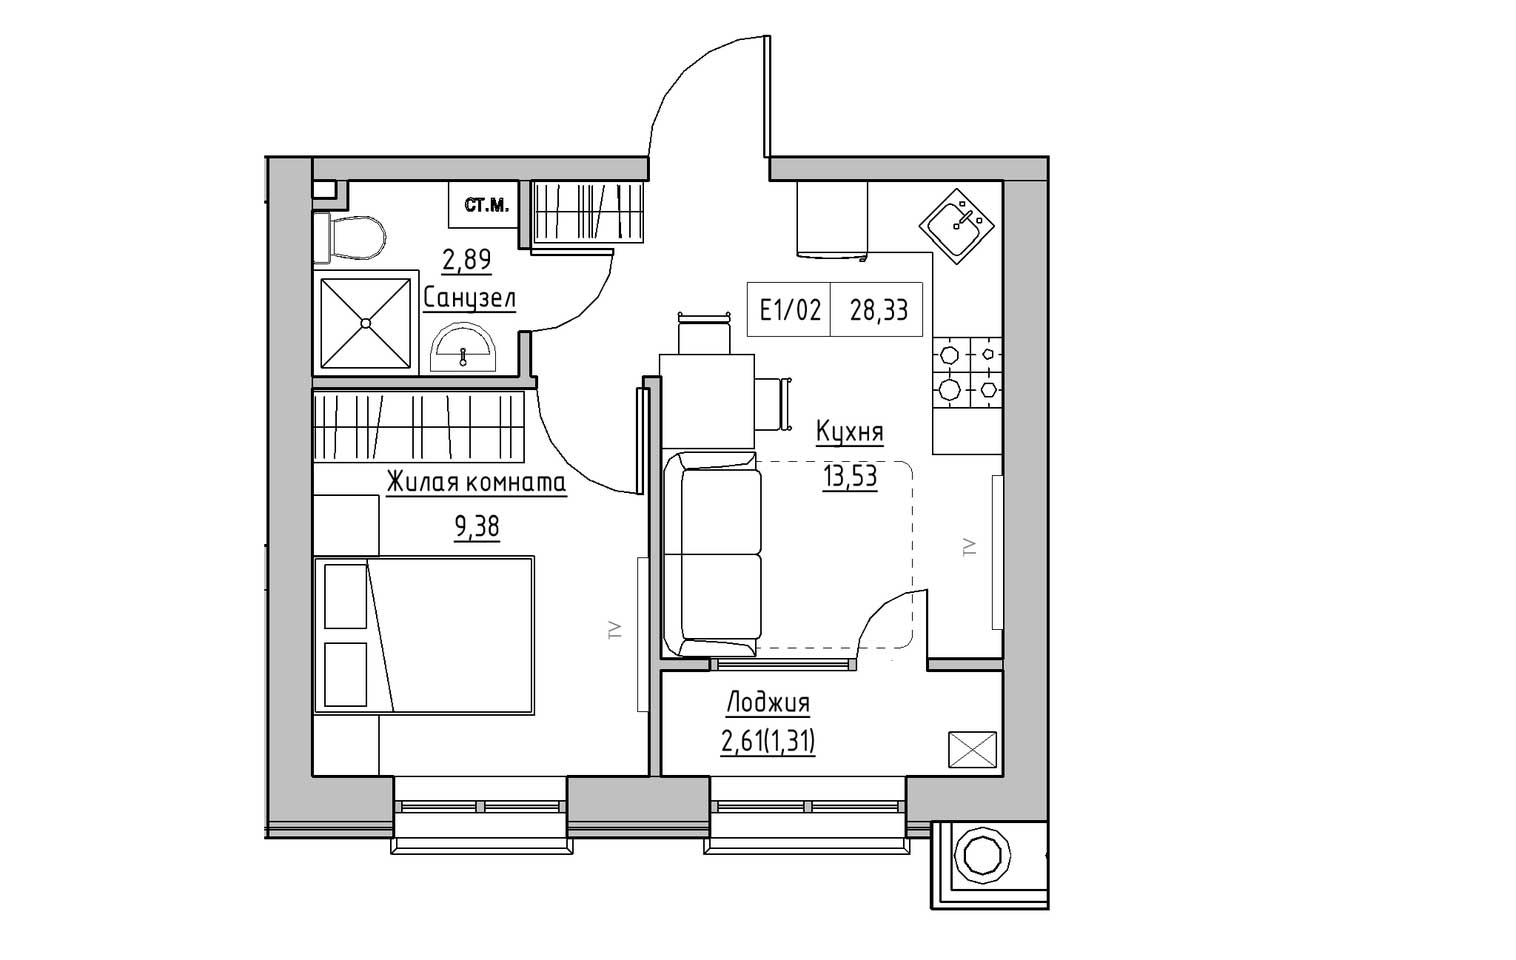 Планировка 1-к квартира площей 28.33м2, KS-009-03/0013.